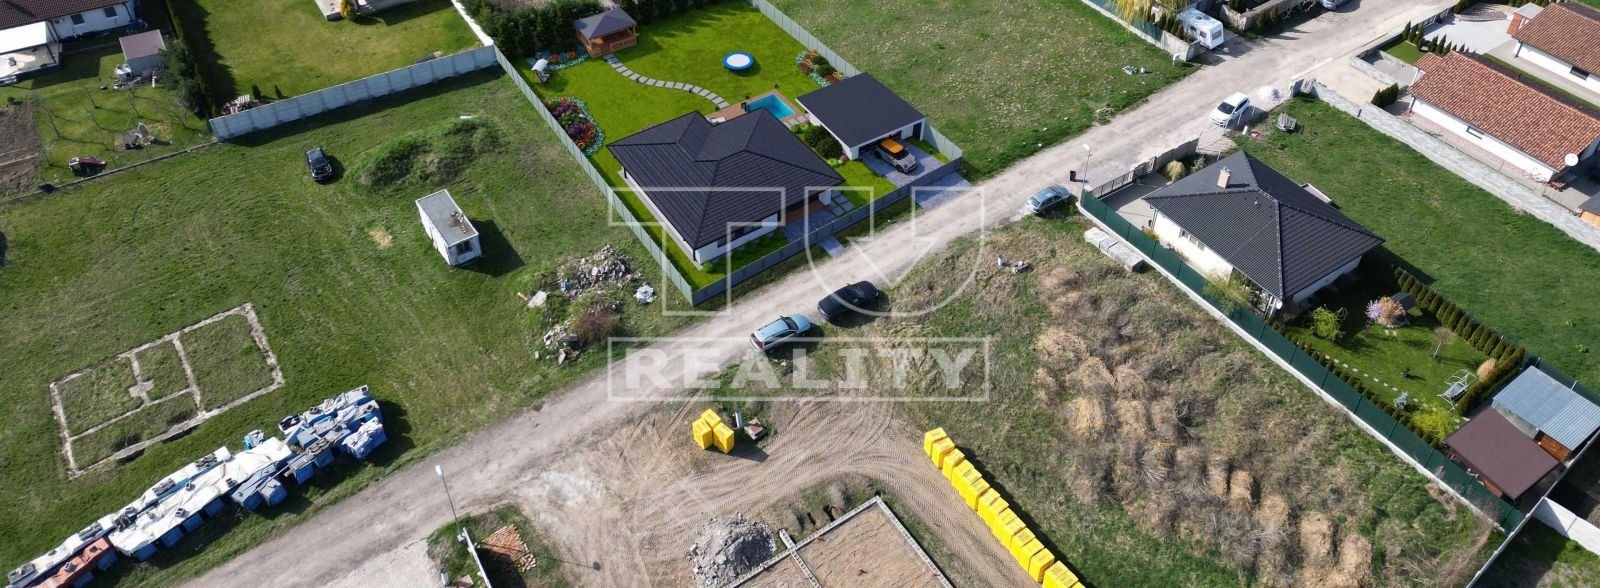 REZERVOVANY! Priestranný, rovinatý pozemok pre výstavbu RD v obci Veľký Cetín s výmerou 1084 m2